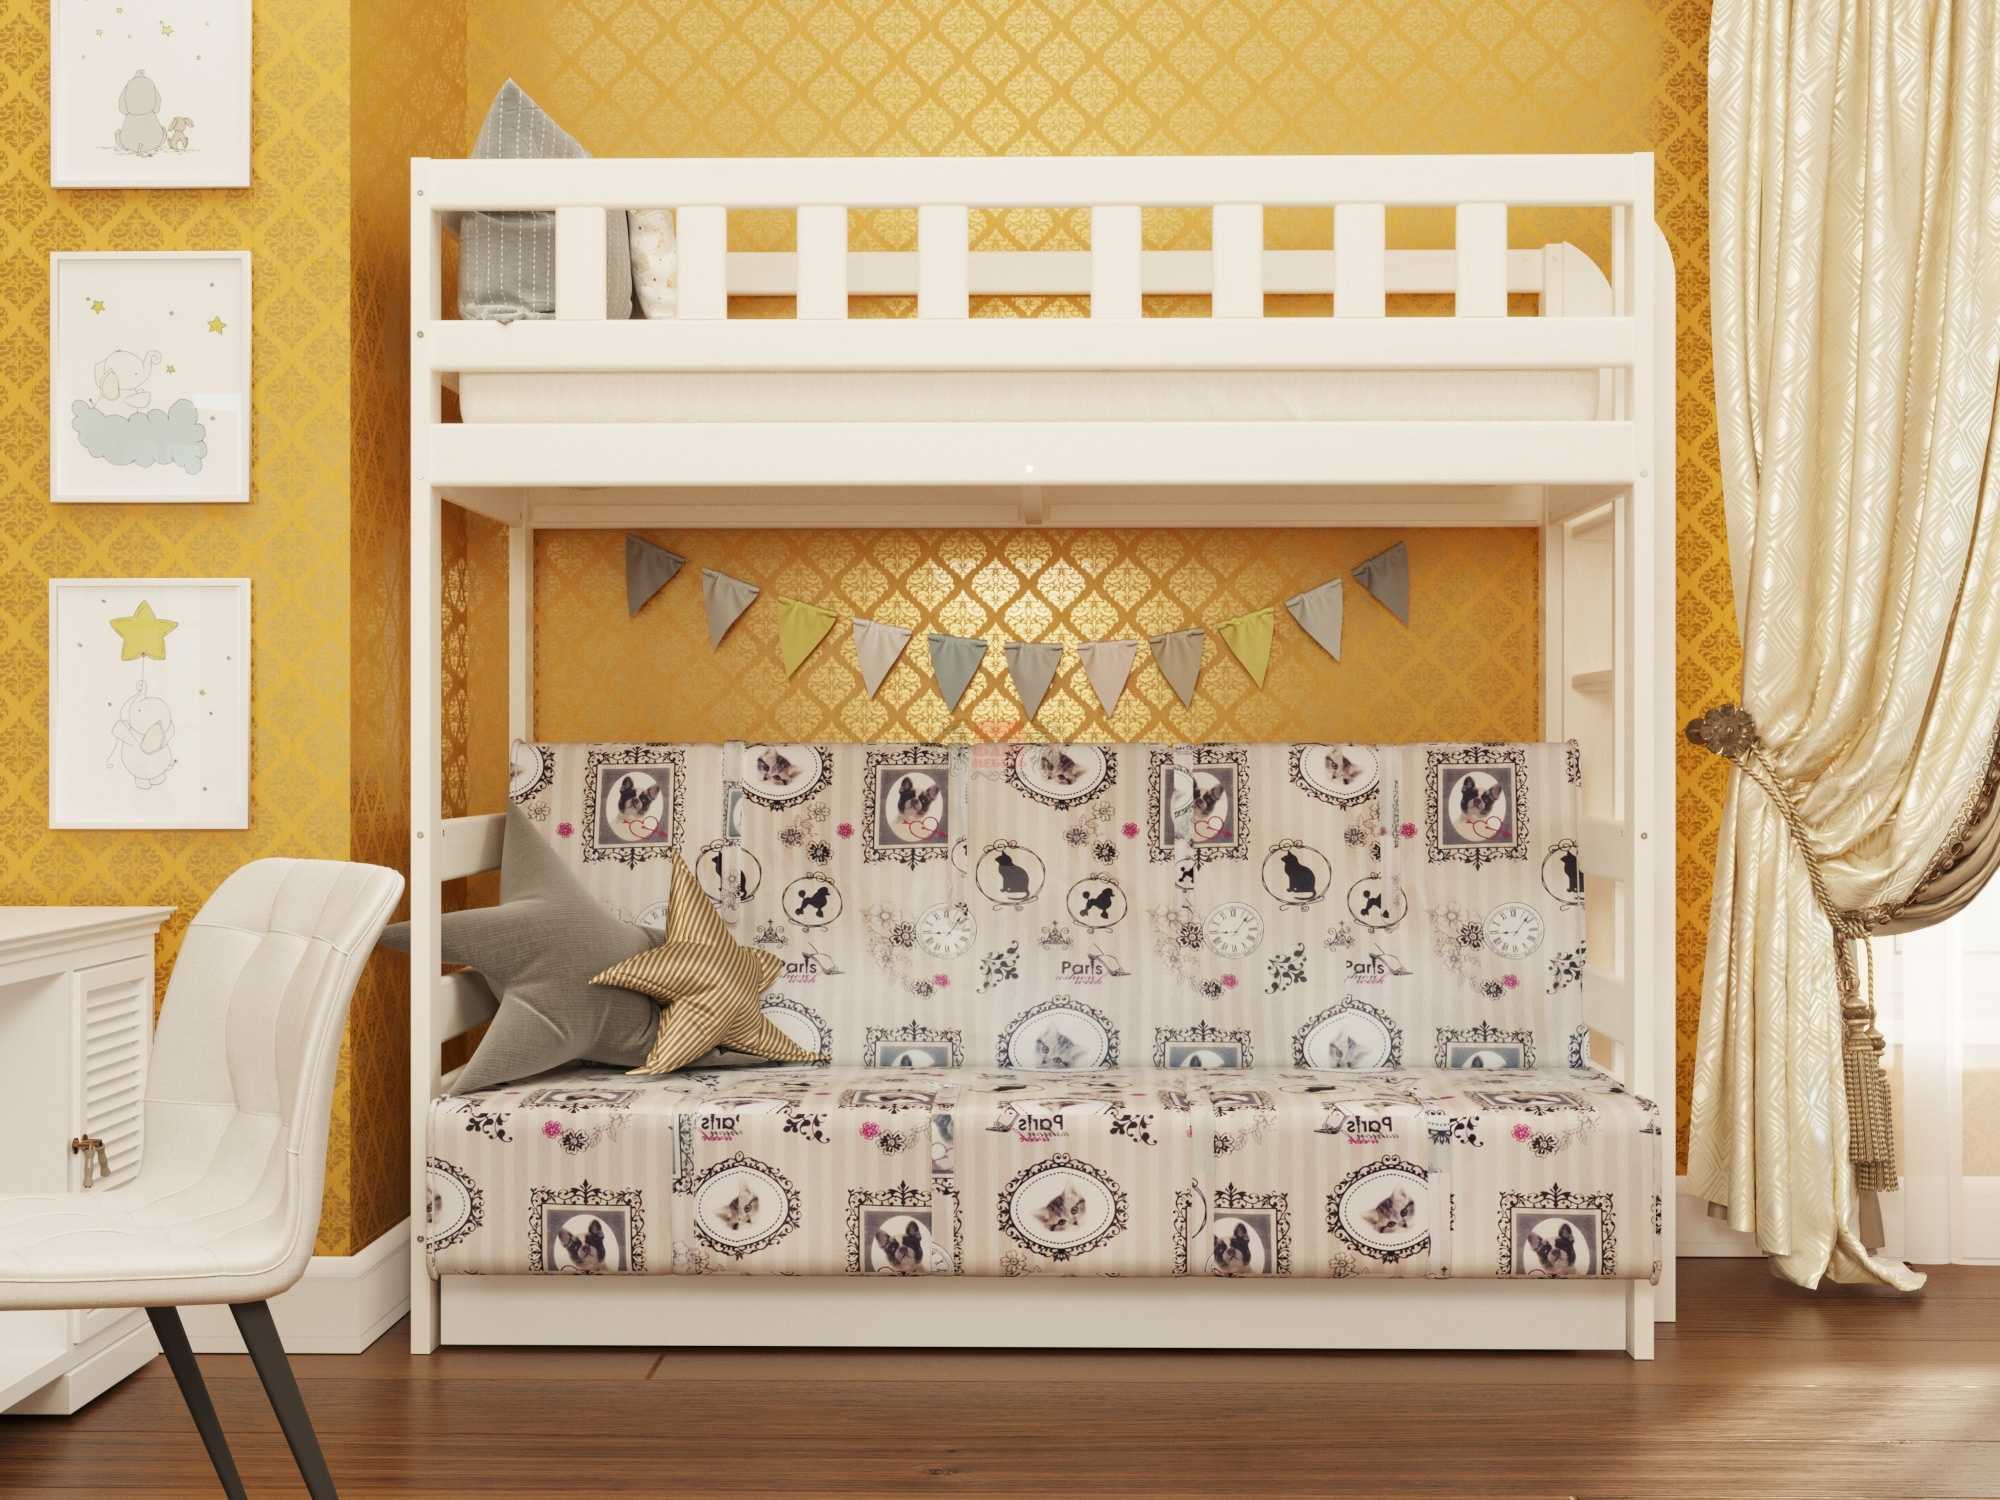 Двухъярусная кровать для взрослых (56 фото): с двуспальным местом внизу для родителей, эскизы двухэтажных моделей со шторами